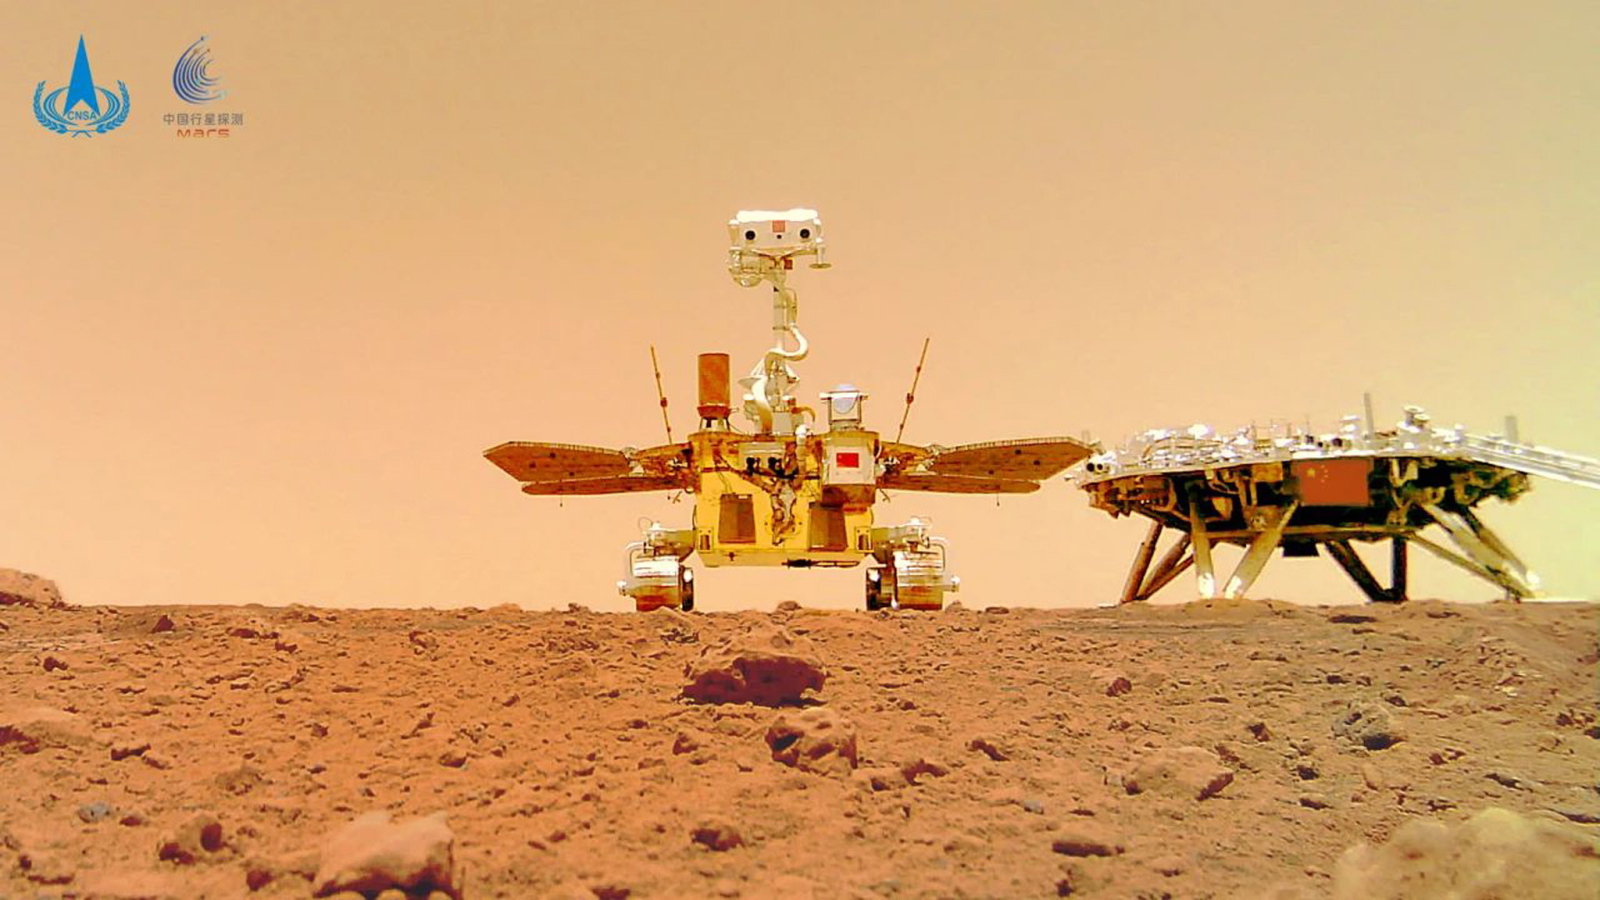 Chińska agencja kosmiczna (CNSA) opublikowała zdjęcia Marsa  EPA/China National Space Administrat  